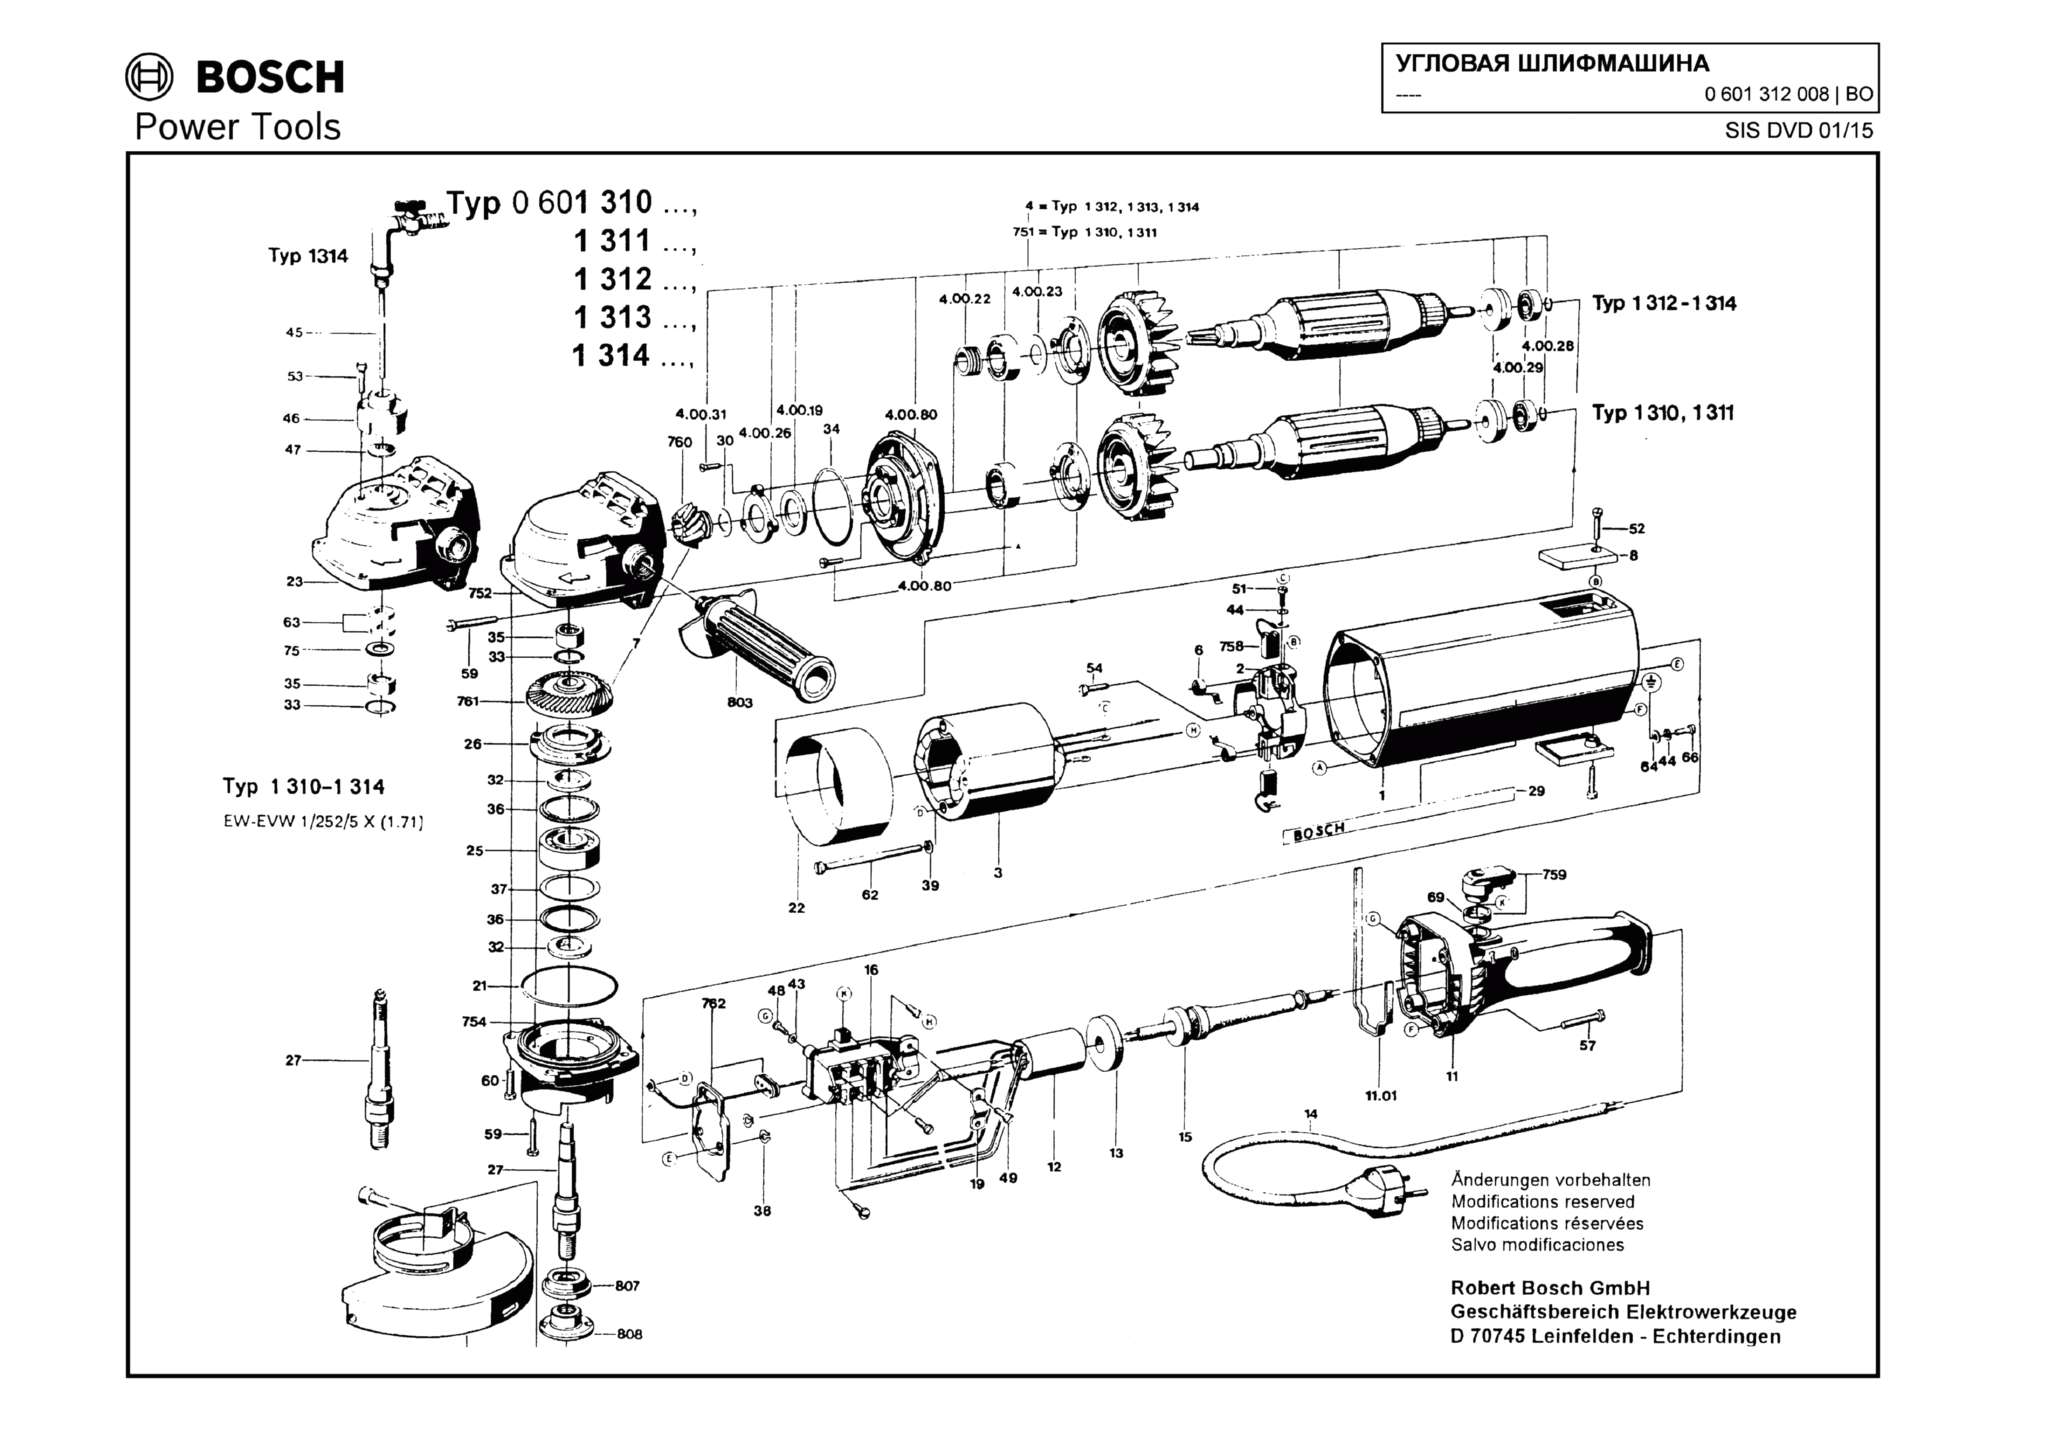 Запчасти, схема и деталировка Bosch (ТИП 0601312008)